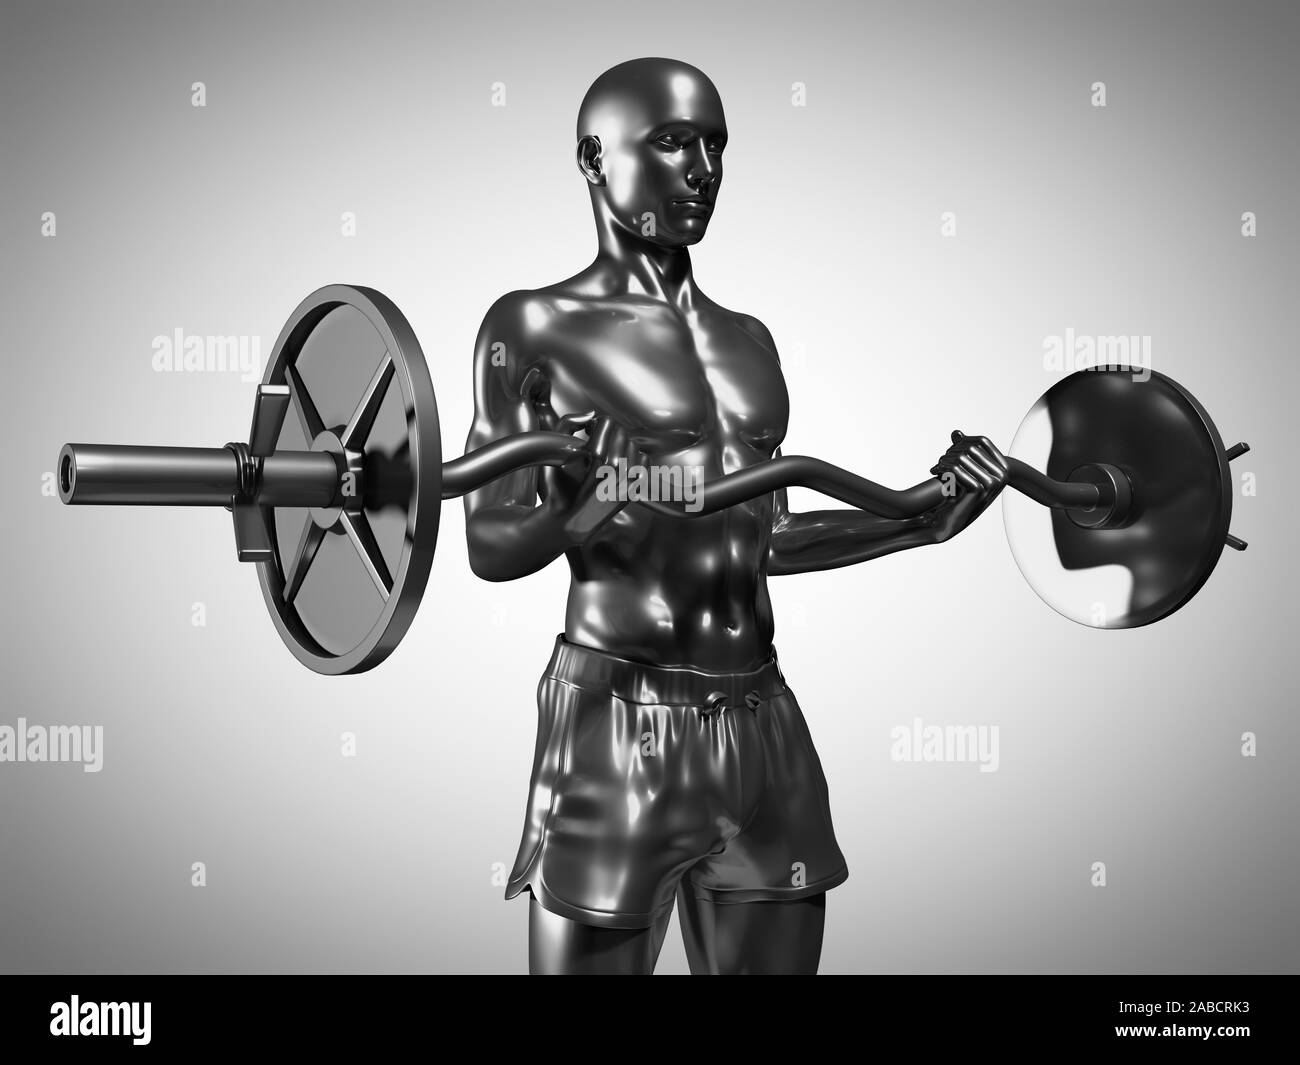 3D Rendering accurato dal punto di vista medico illustrazione di un uomo metallico il sollevamento di un barbell Foto Stock